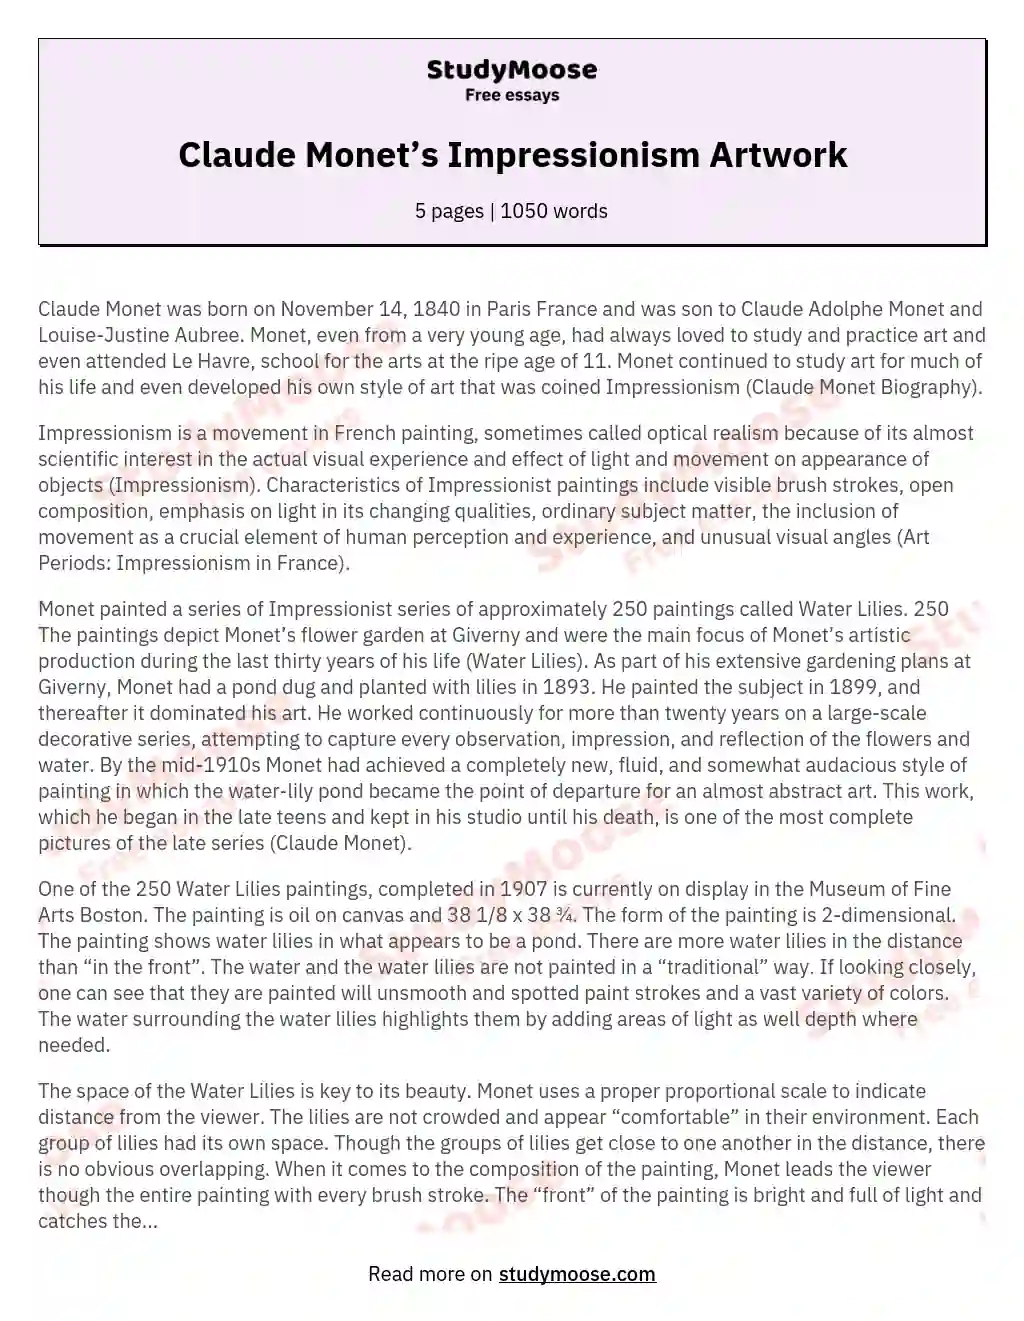 Claude Monet’s Impressionism Artwork essay